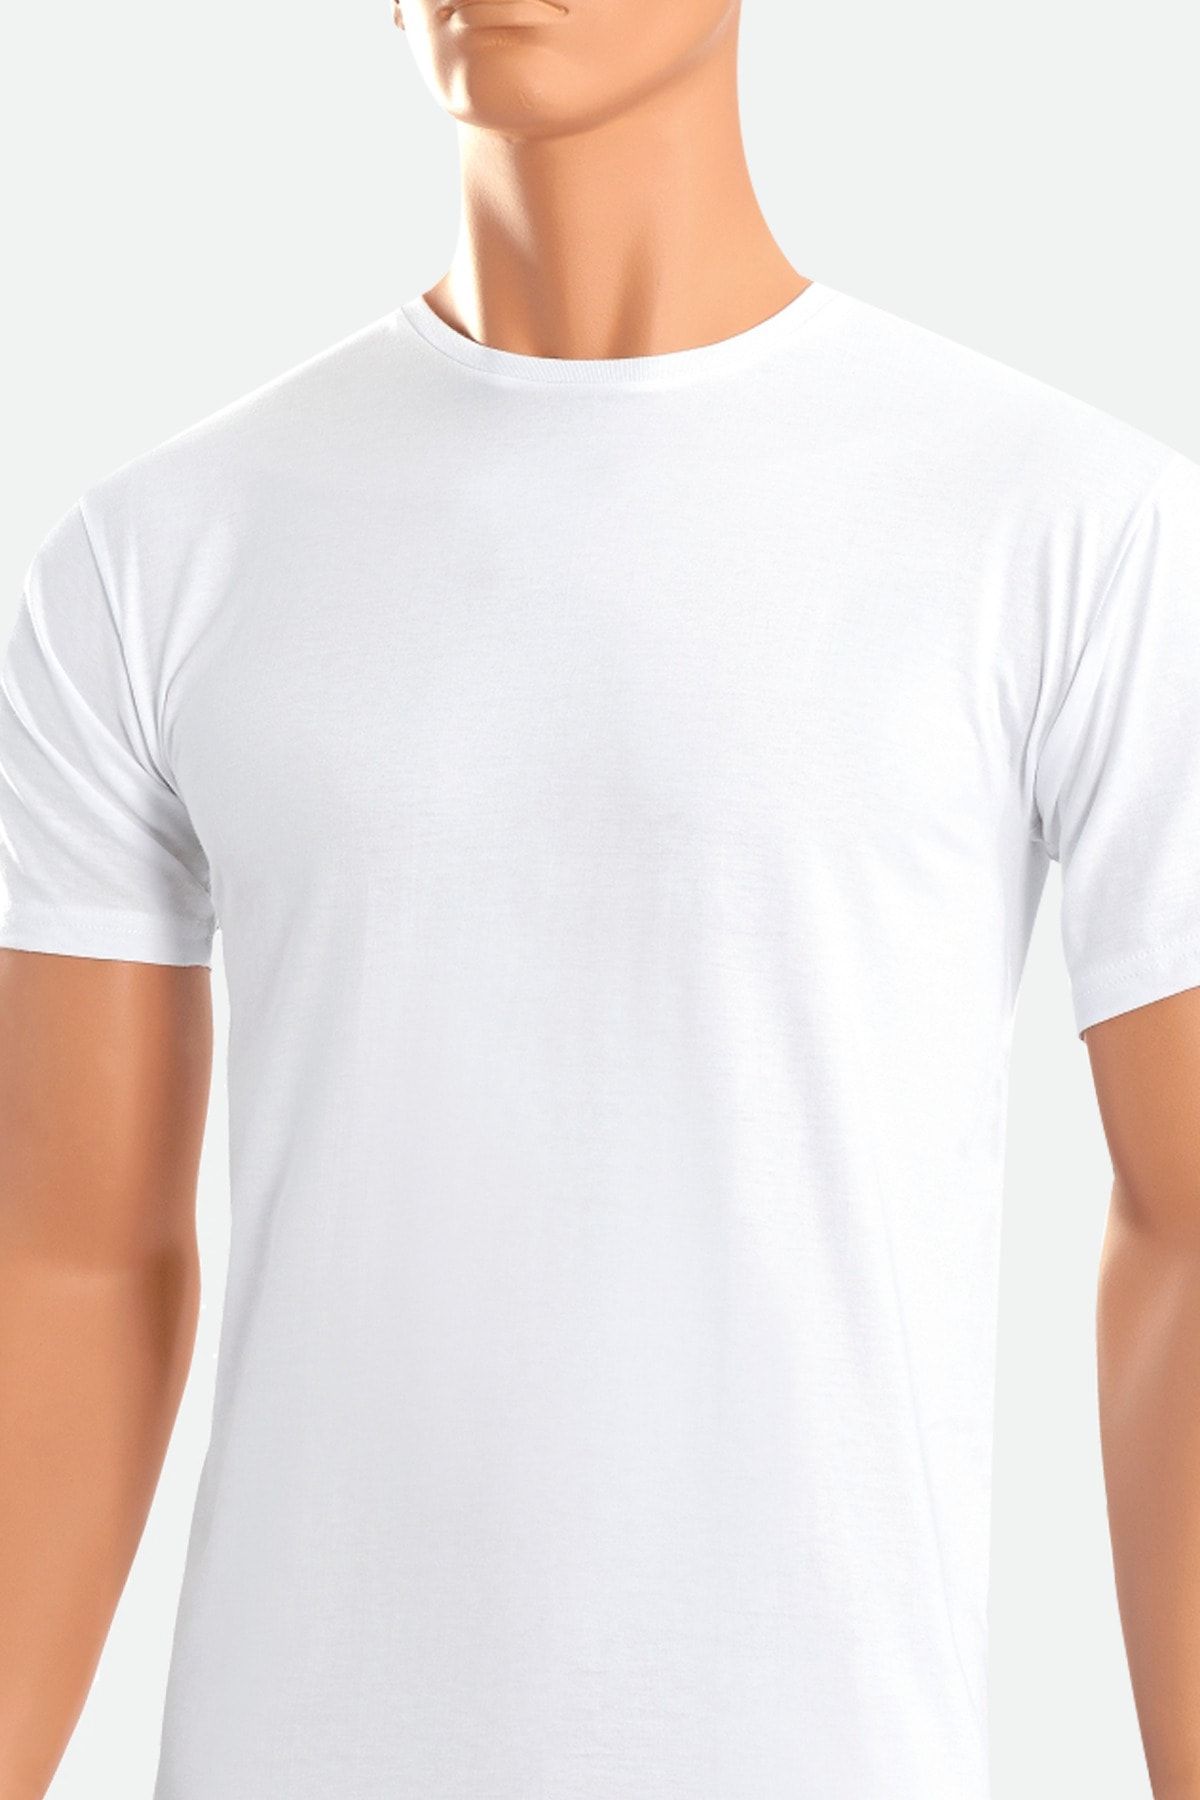 Öts 2'li Erkek Süprem Kapalı Yaka T-shirt Beyaz (%100 Pamuk)